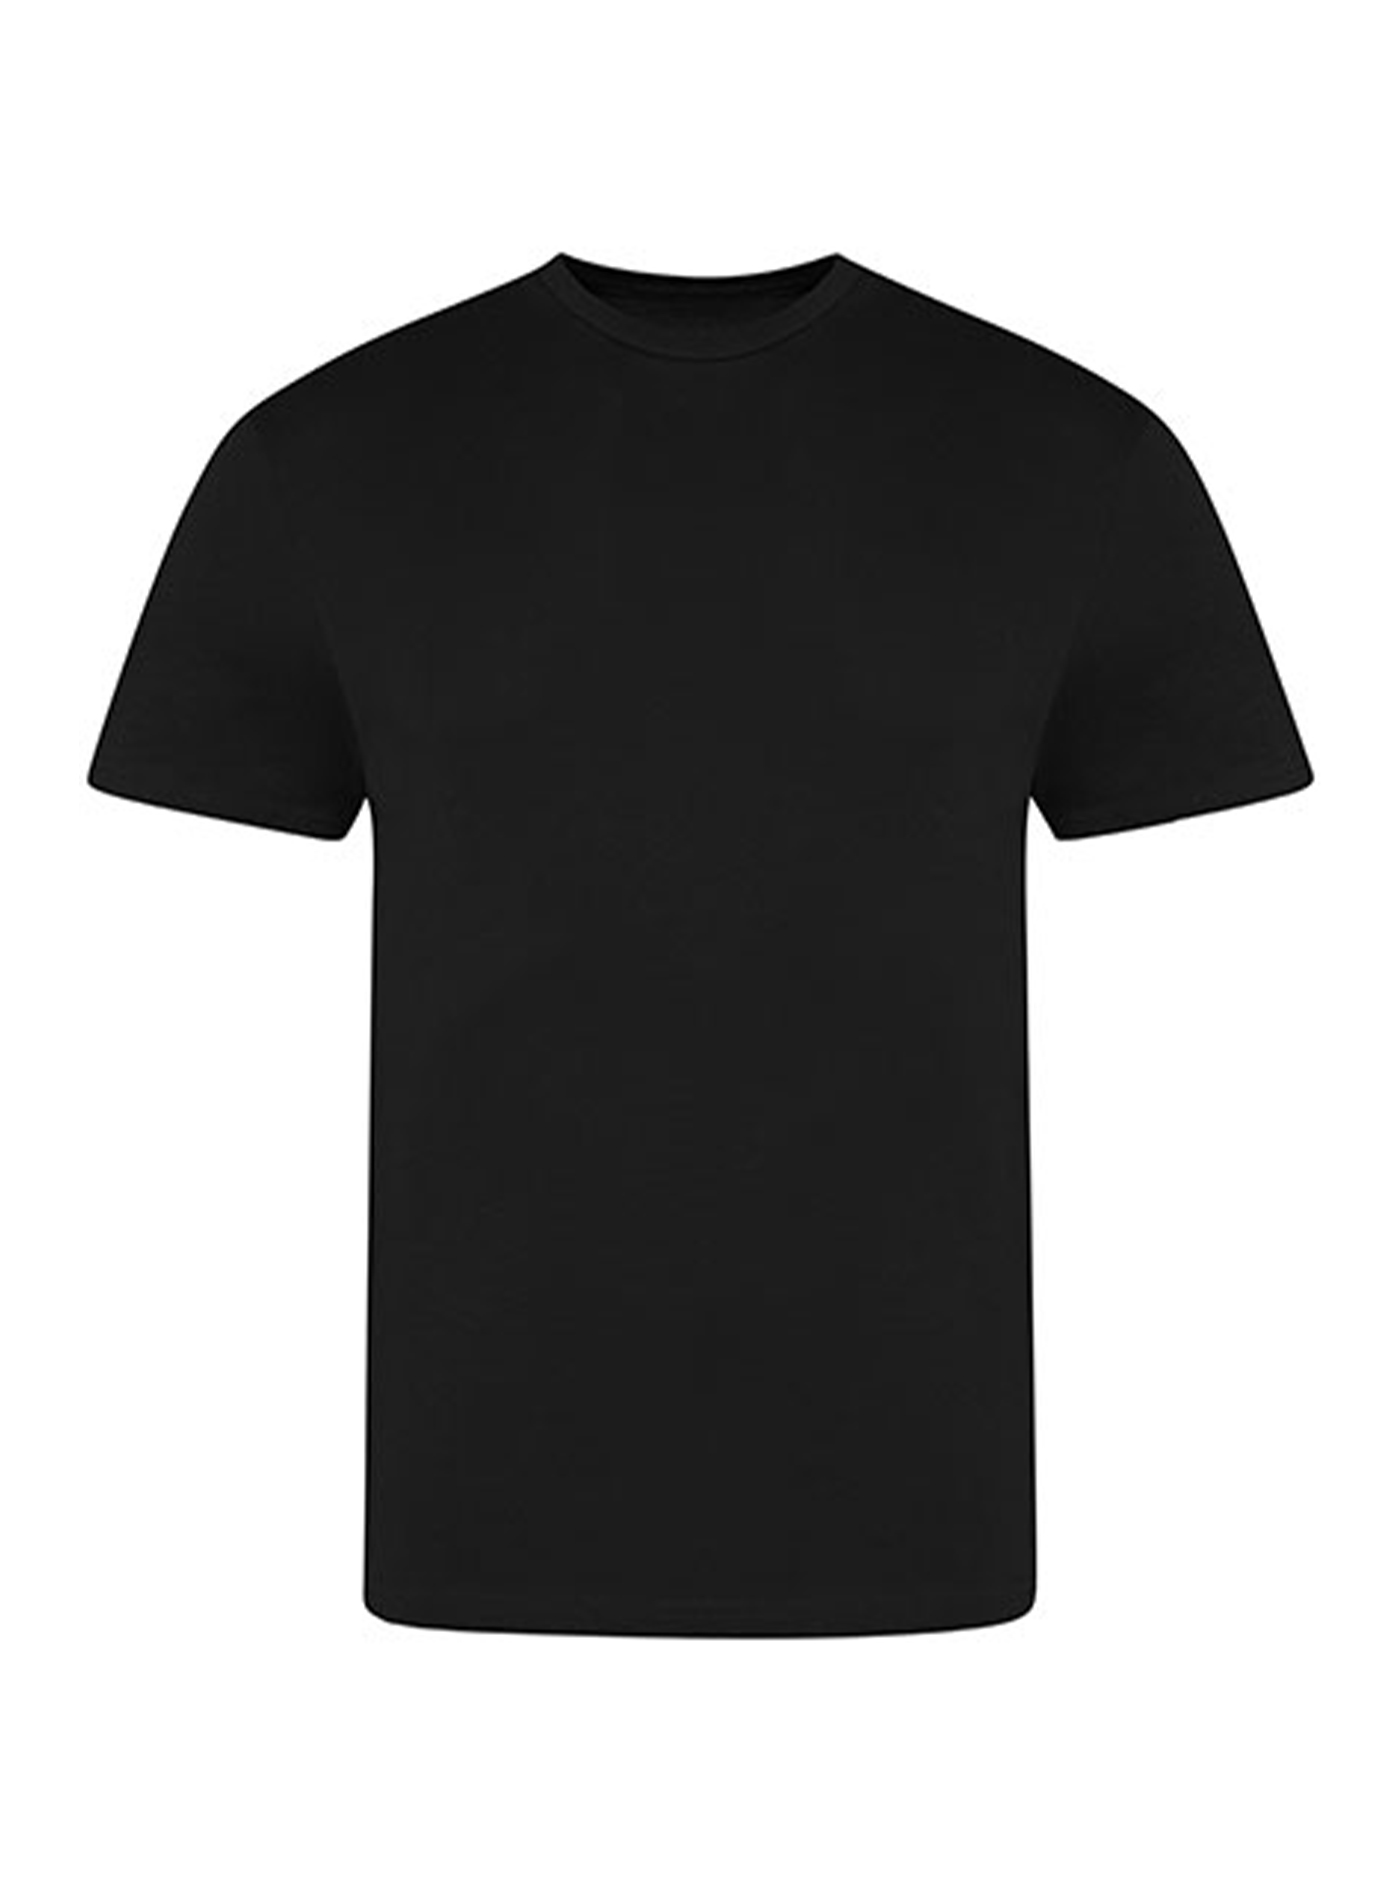 Pánské tričko Just Ts - černá XL